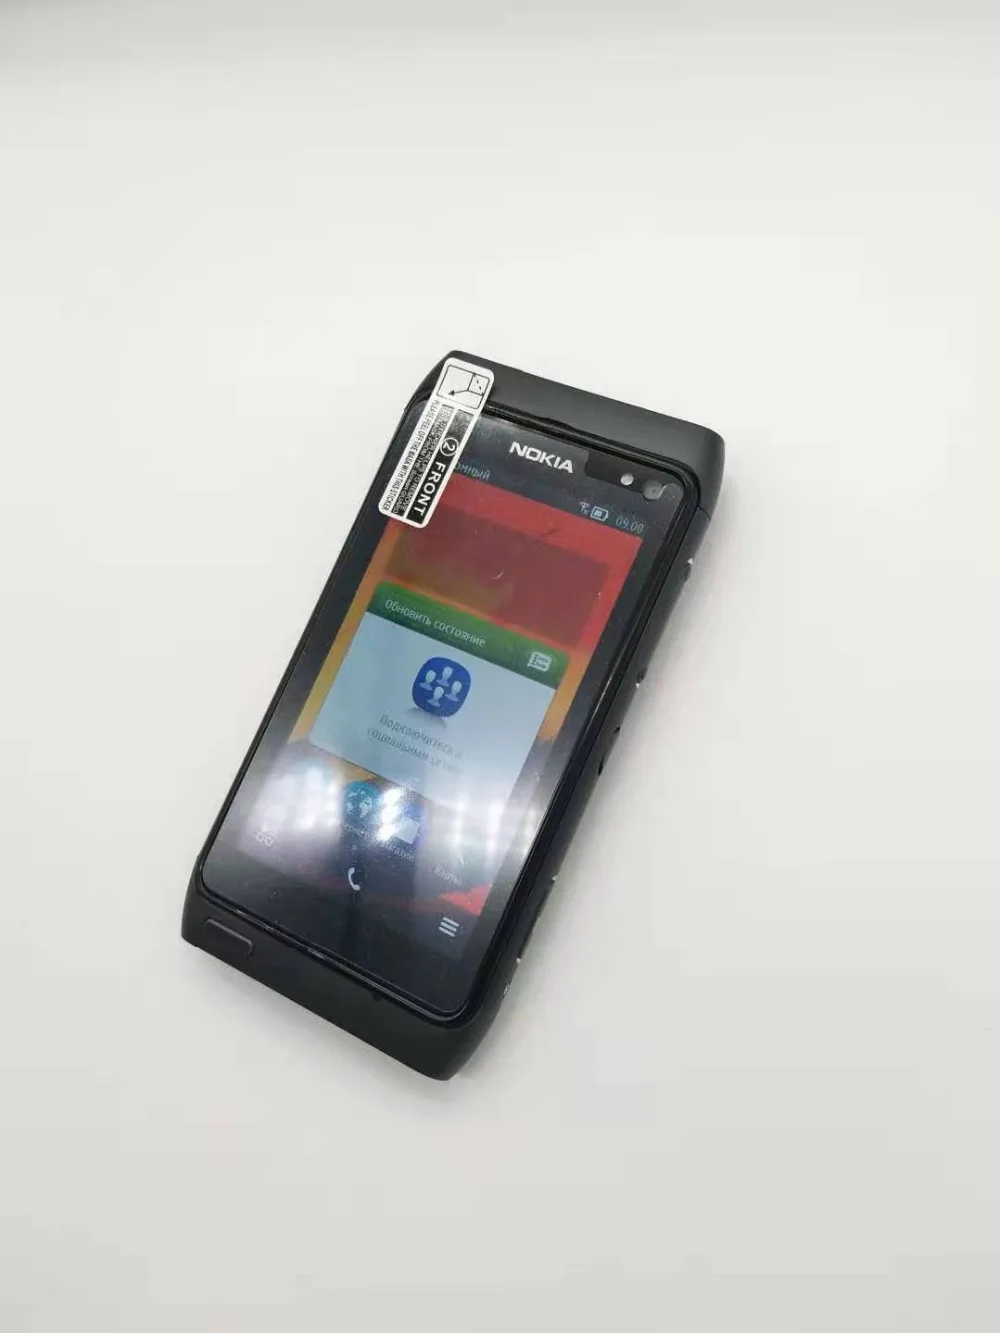 Nokia N8 мобильный телефон 3g wifi gps 12MP сенсорный экран 3," разблокированный мобильный телефон 16 Гб внутренний отремонтированный